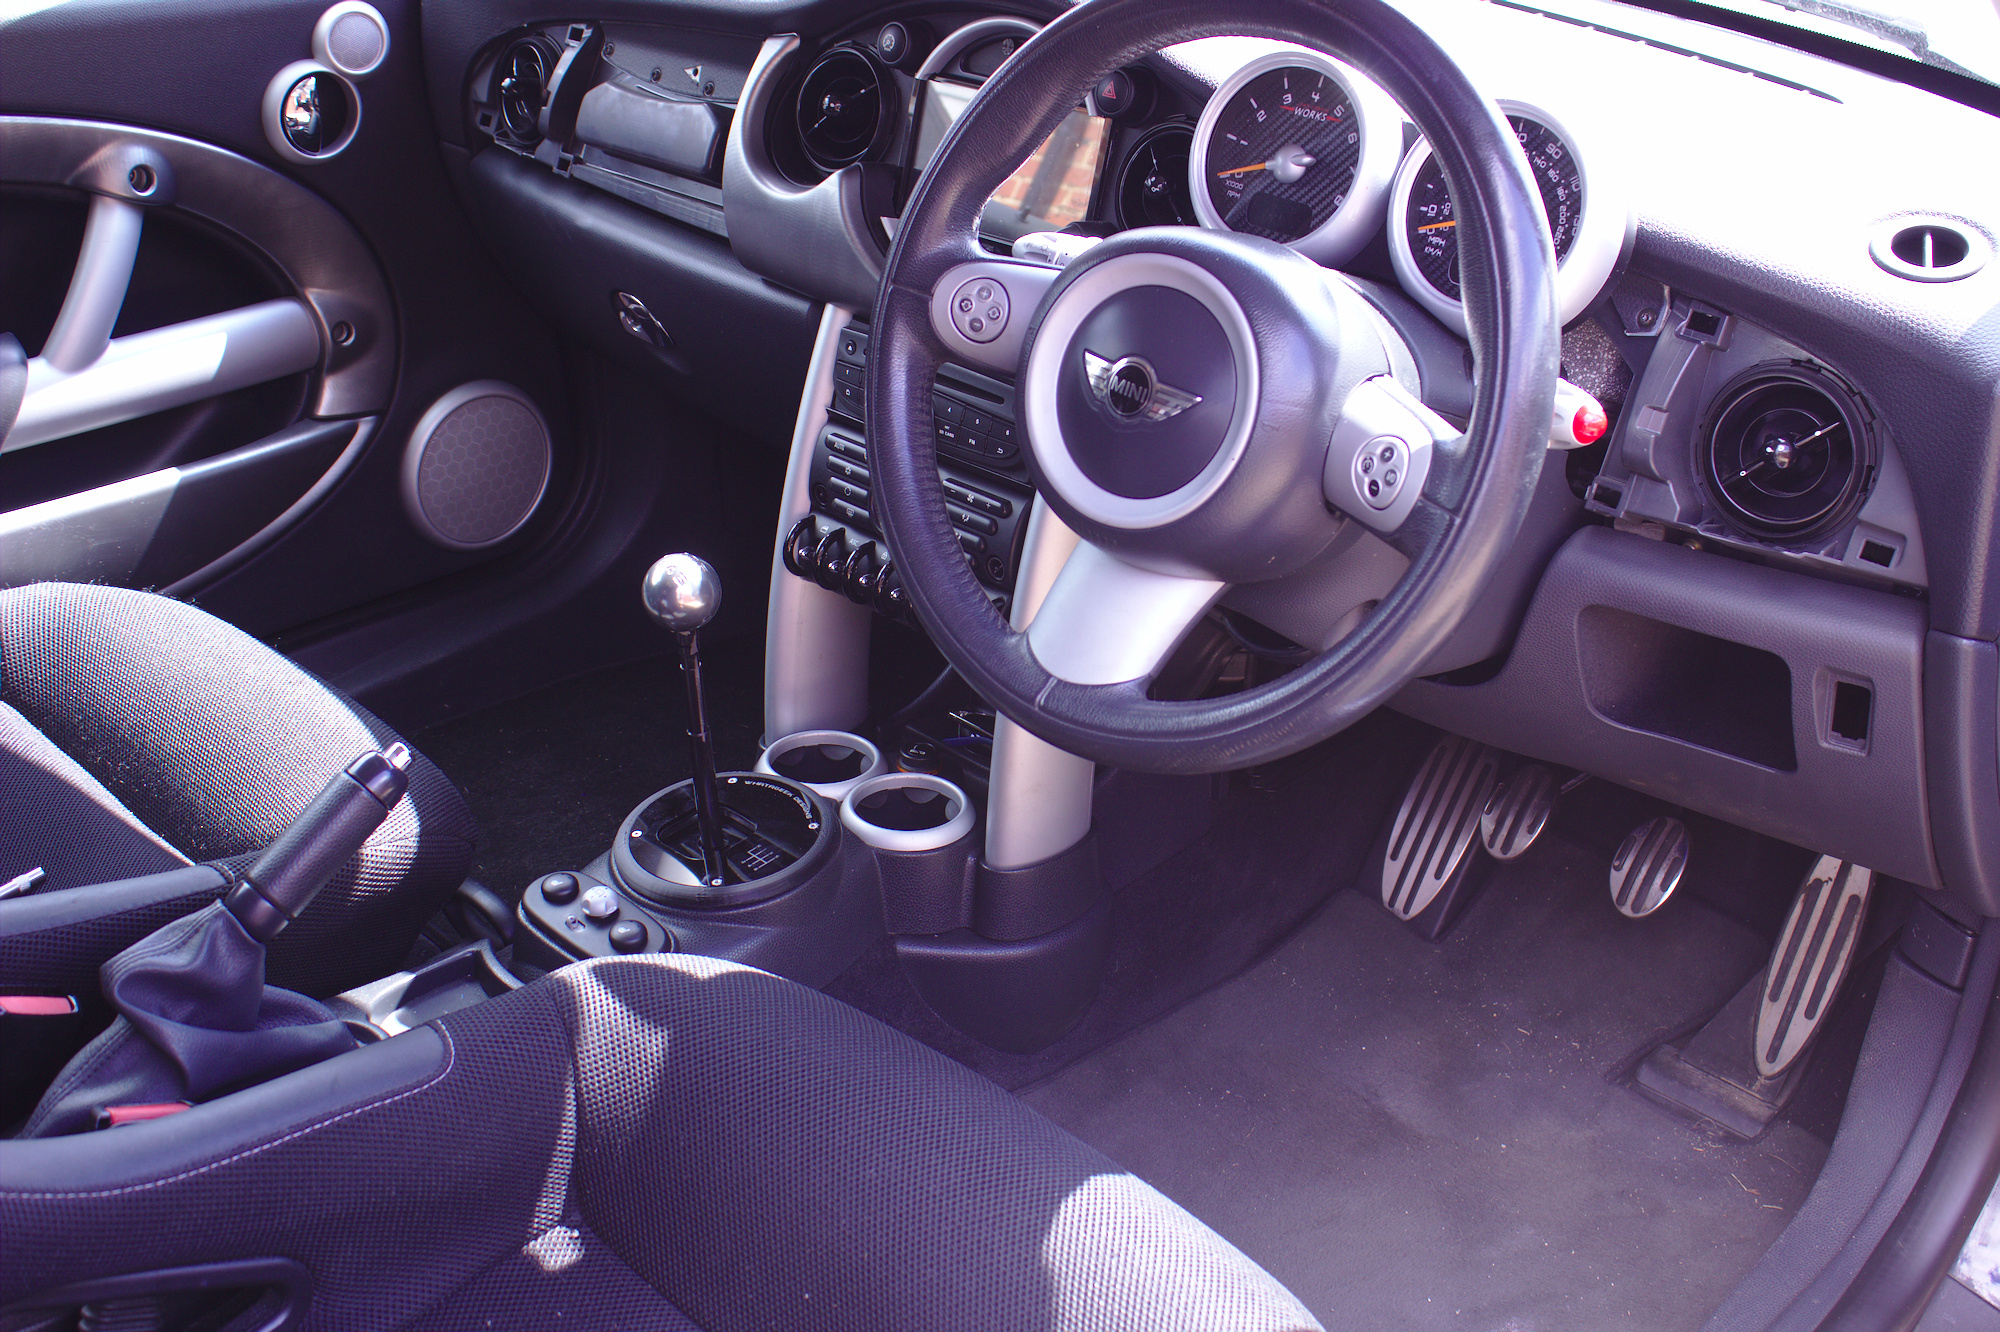 2006 Mini Cooper Customweave Stretch Fit Indoor Custom Car Cover